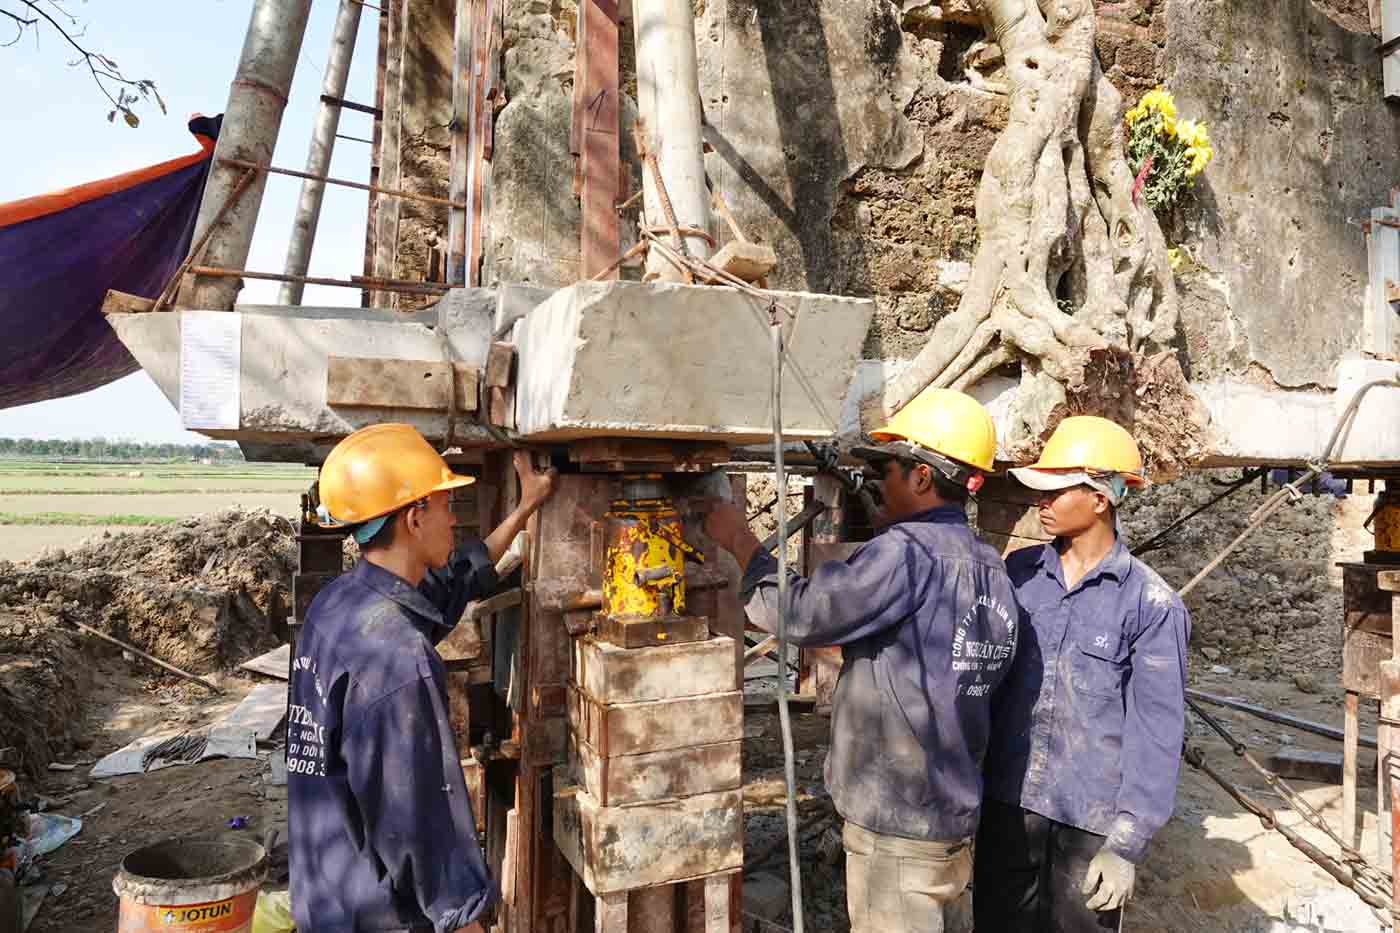 Đội thợ của ông Cư đang hoàn thiện đổ trụ đỡ nâng cổng đền ở Hà Tĩnh lên cao 1,2m sau khi đã di chuyển đi 63m. Ảnh: Trần Tuấn.